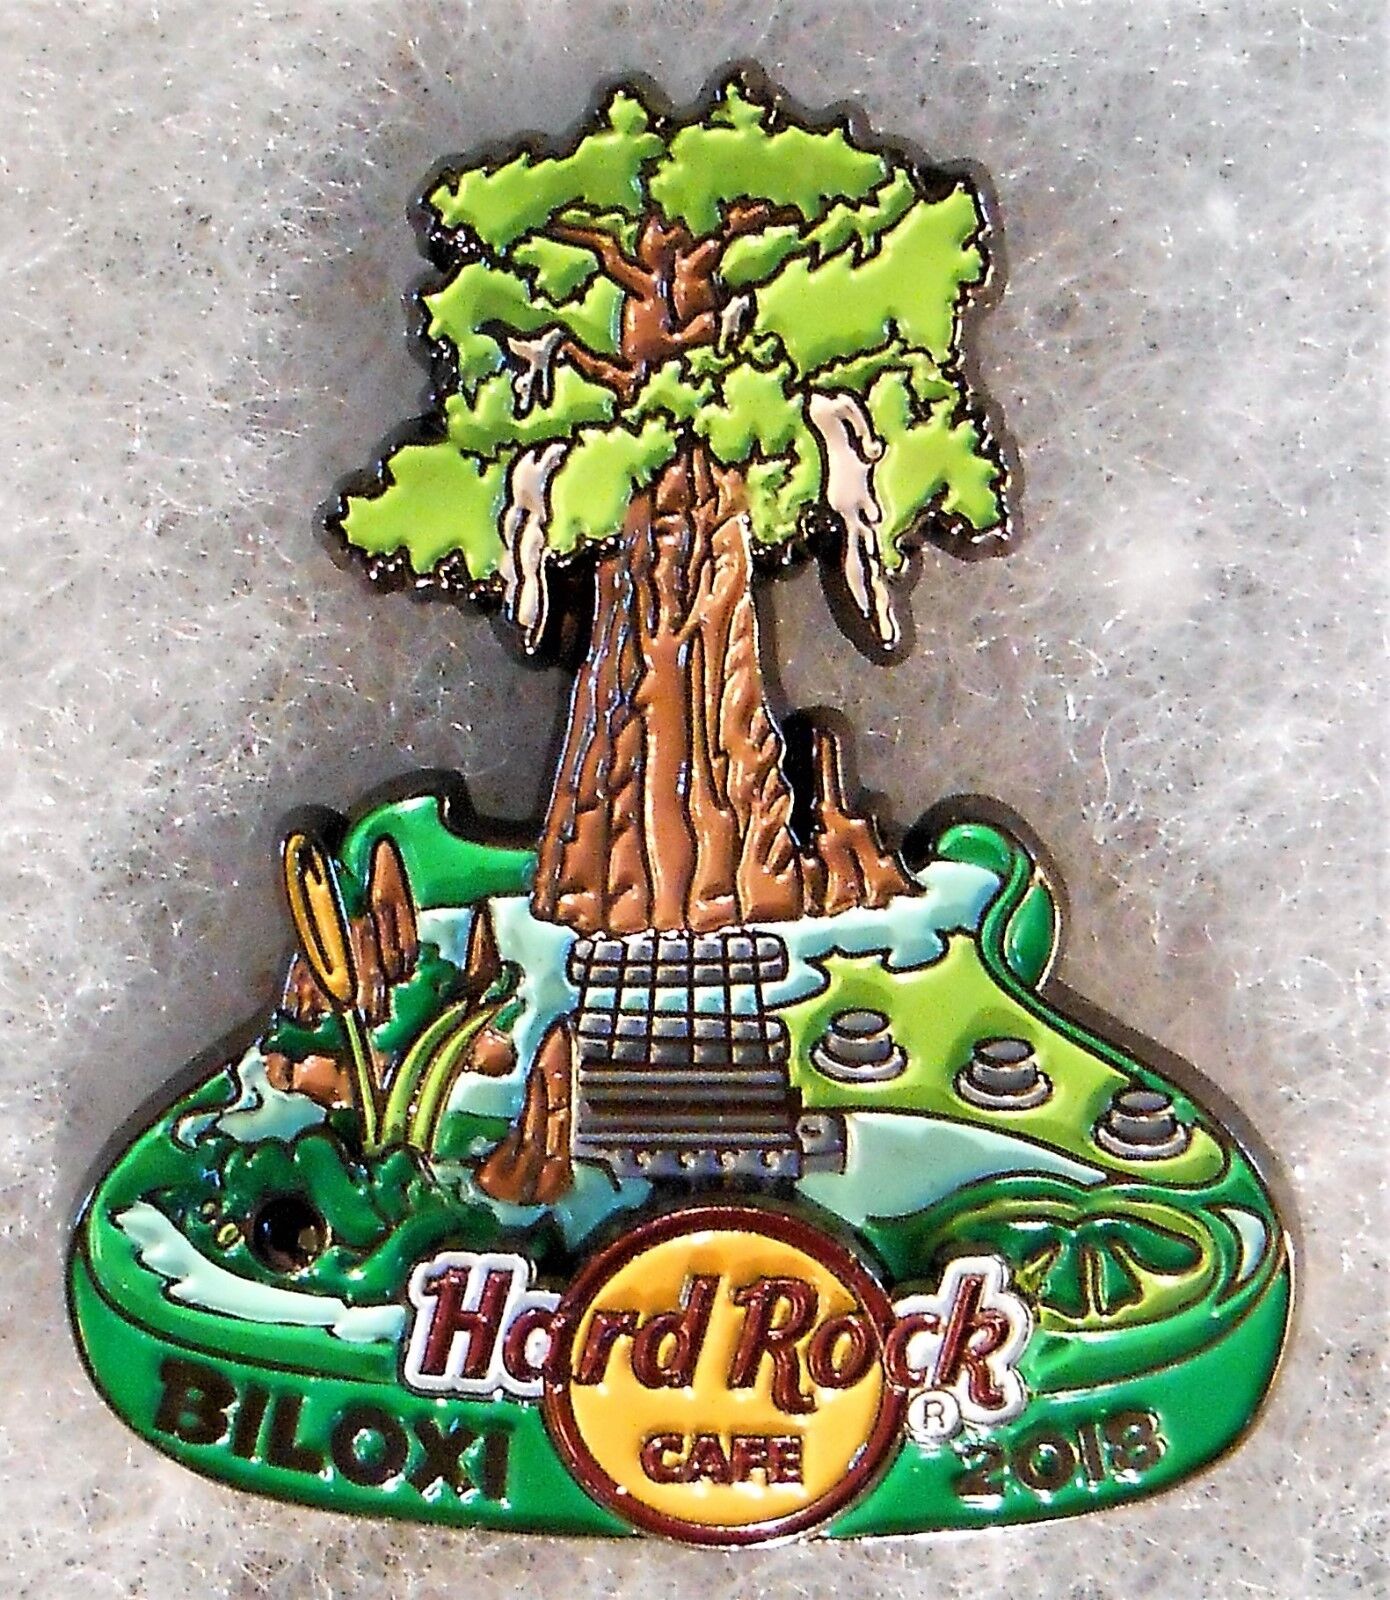 HARD ROCK CAFE BILOXI 3D CYPRESS TREE GUITAR WITH SWAMP & ALLIGATOR PIN # 98936